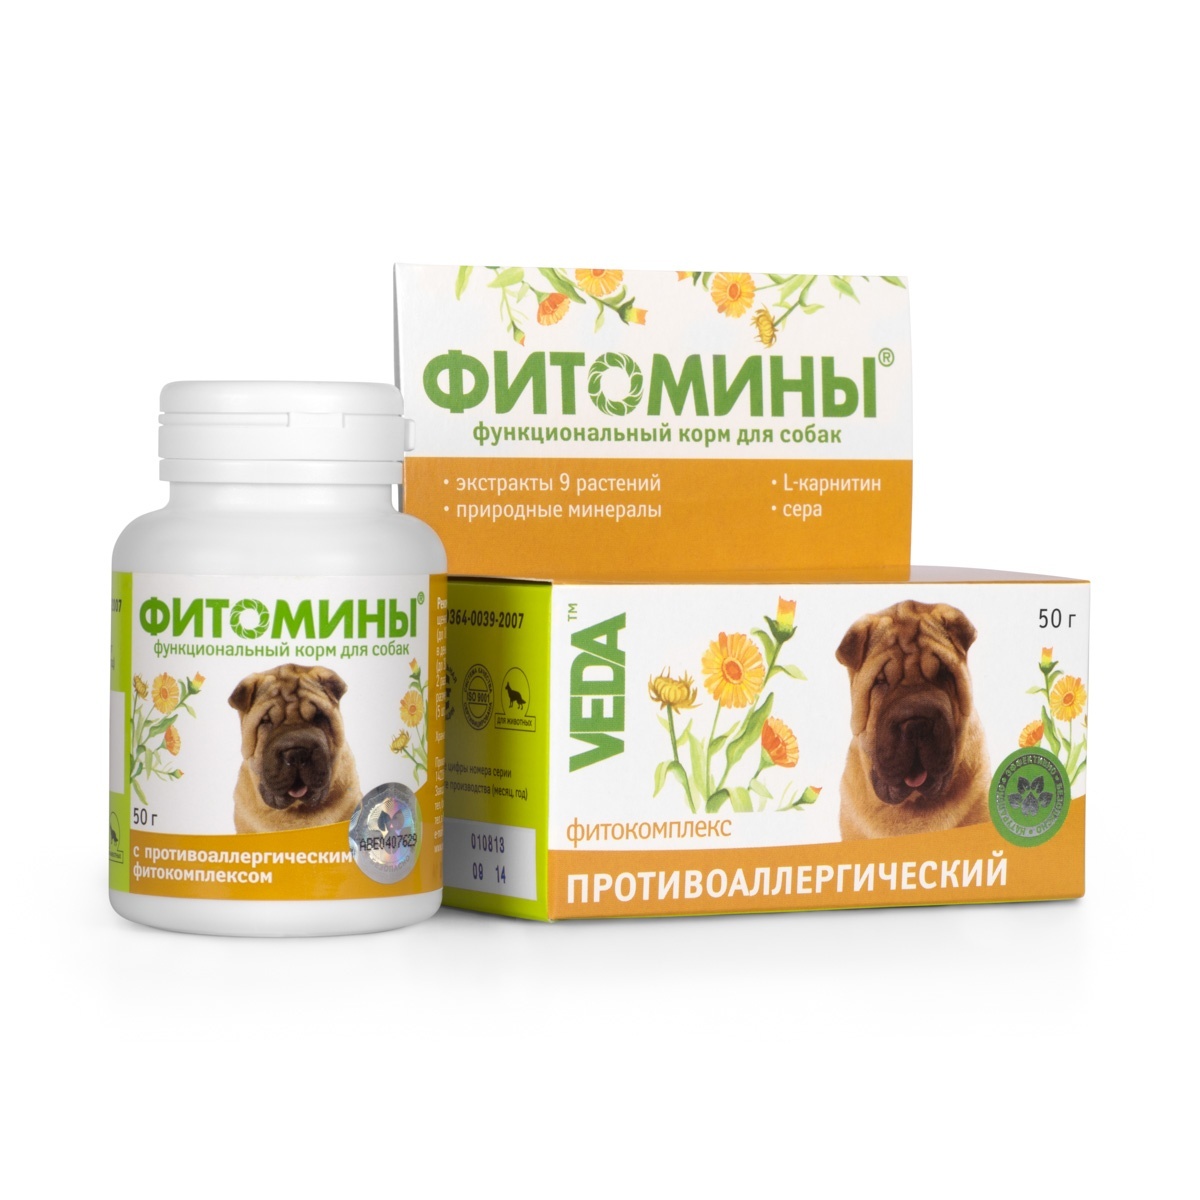 Веда Веда фитомины от аллергии для собак, 100 таб. (50 г)